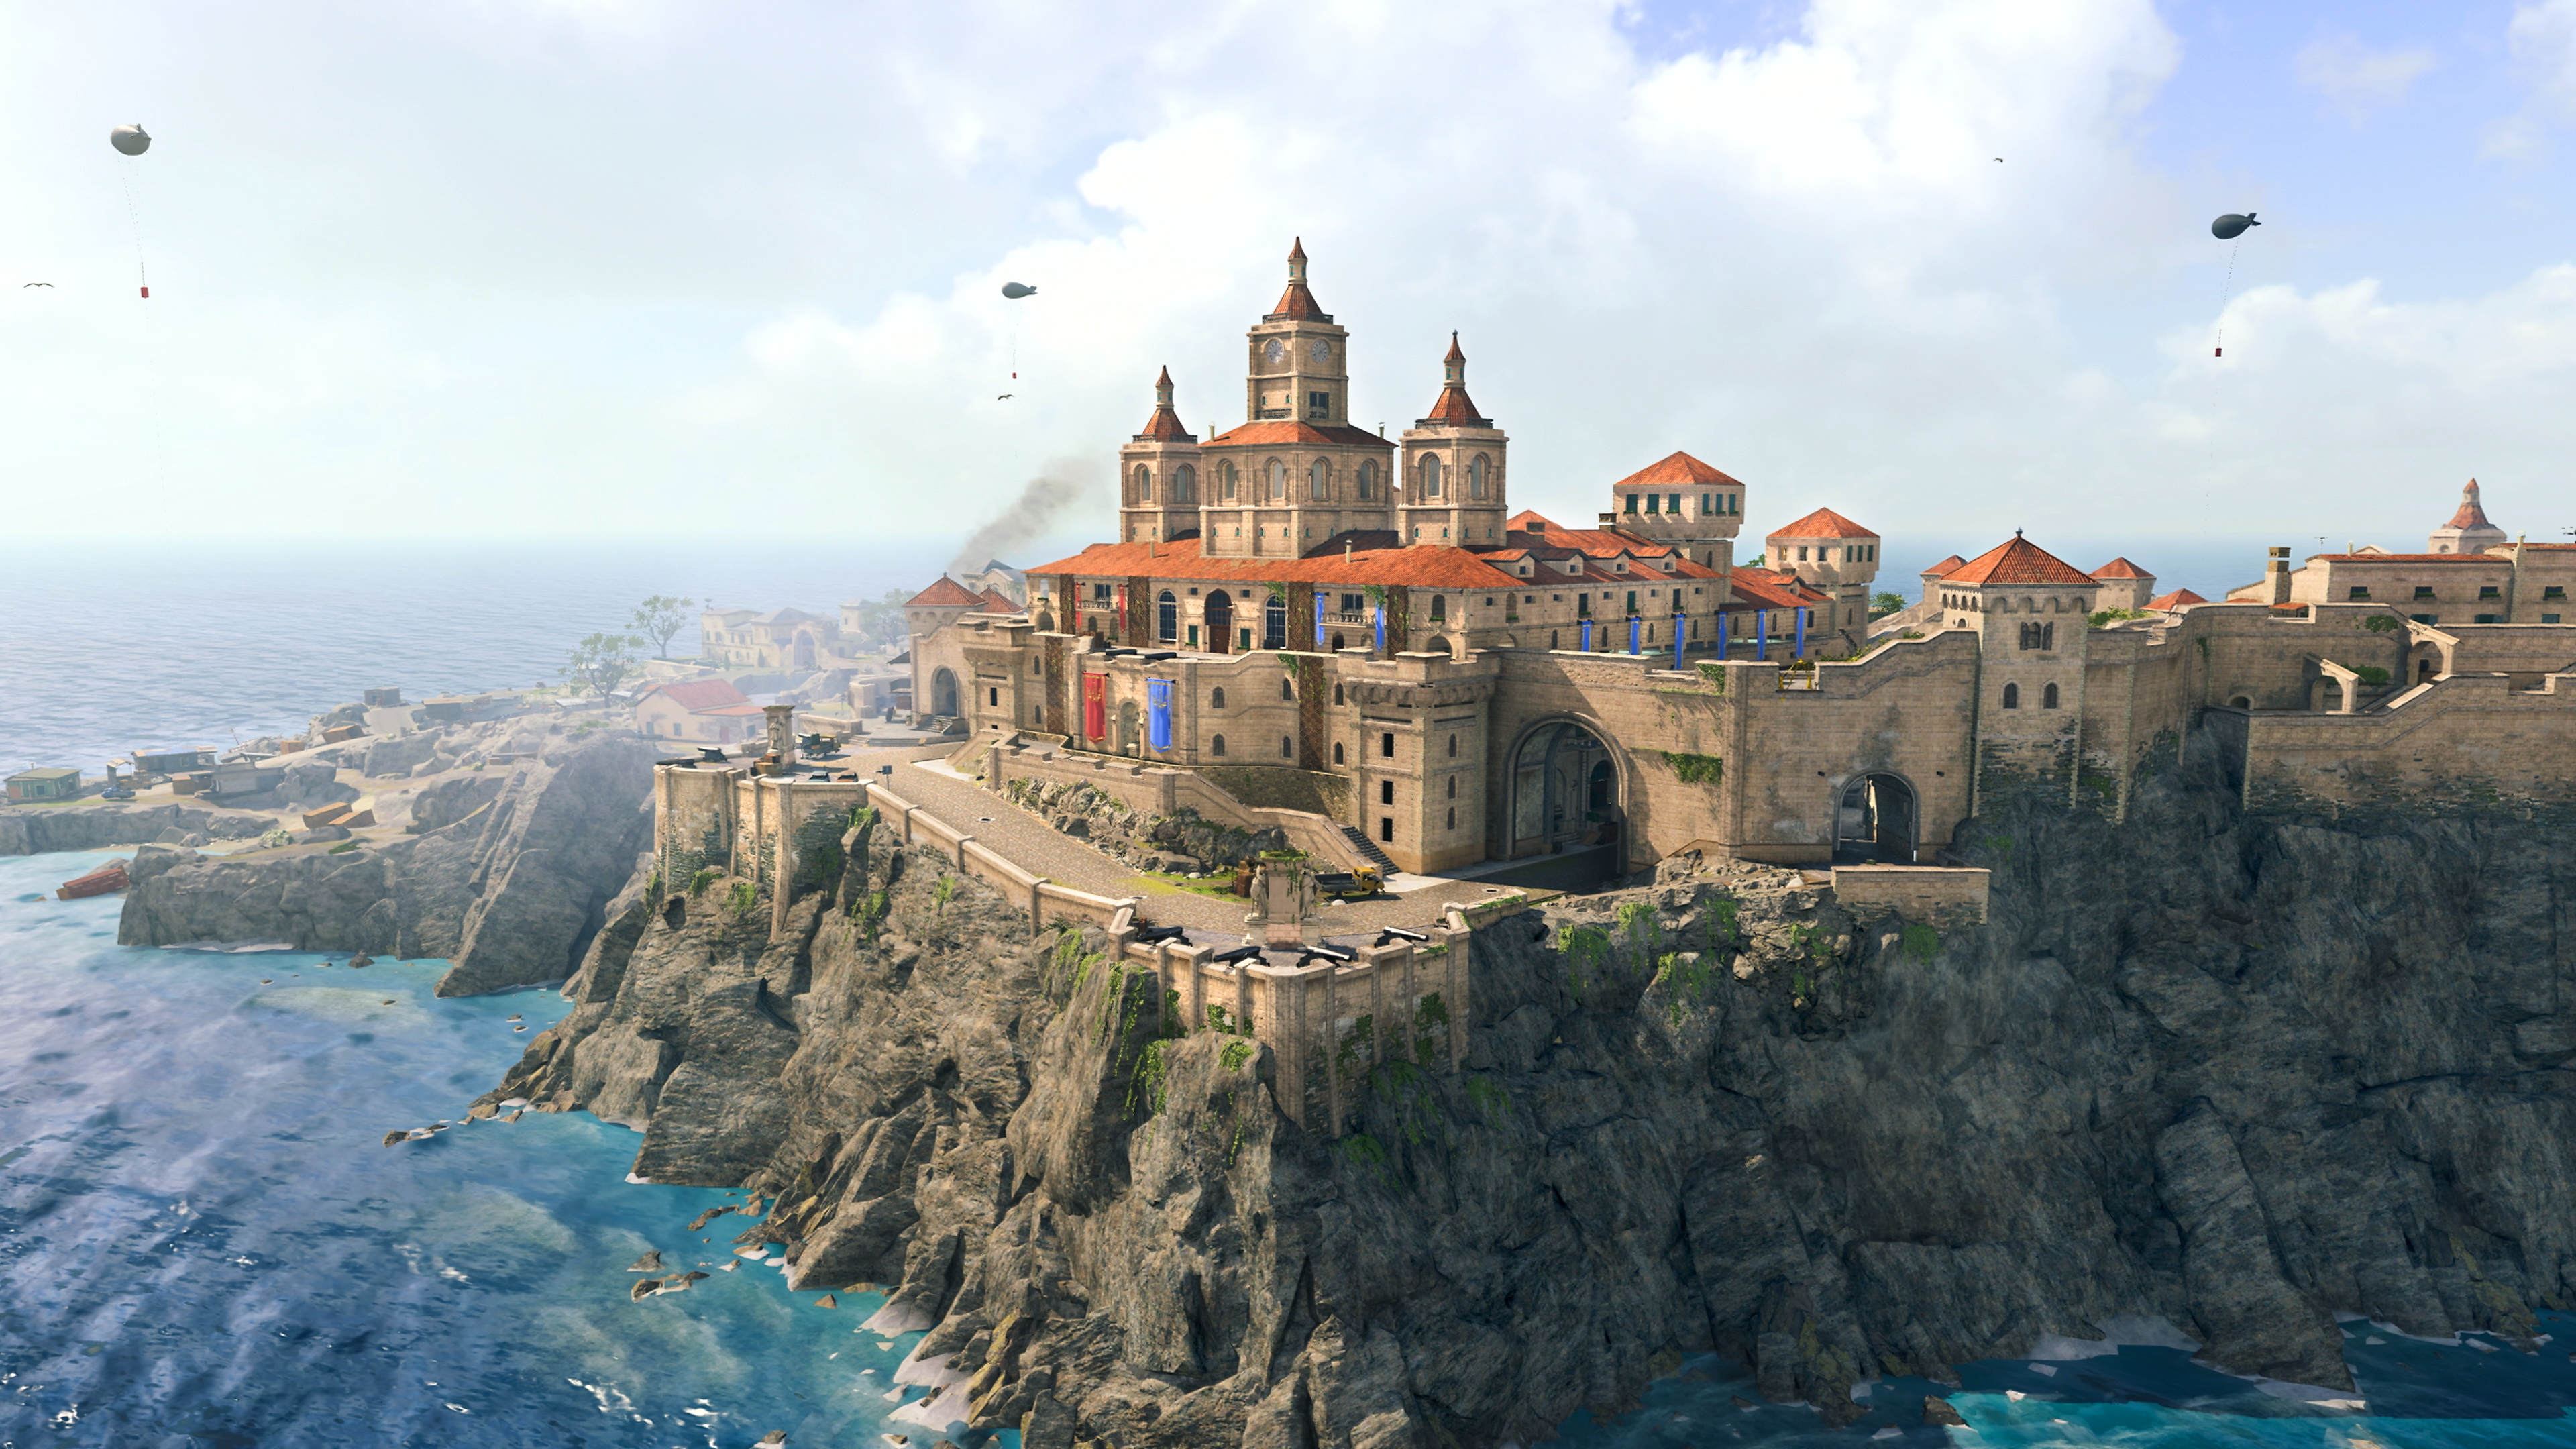 Call of Duty Warzone – снимок экрана с изображением новой карты Fortune's Keep с большим зданием рядом со скалой у океана